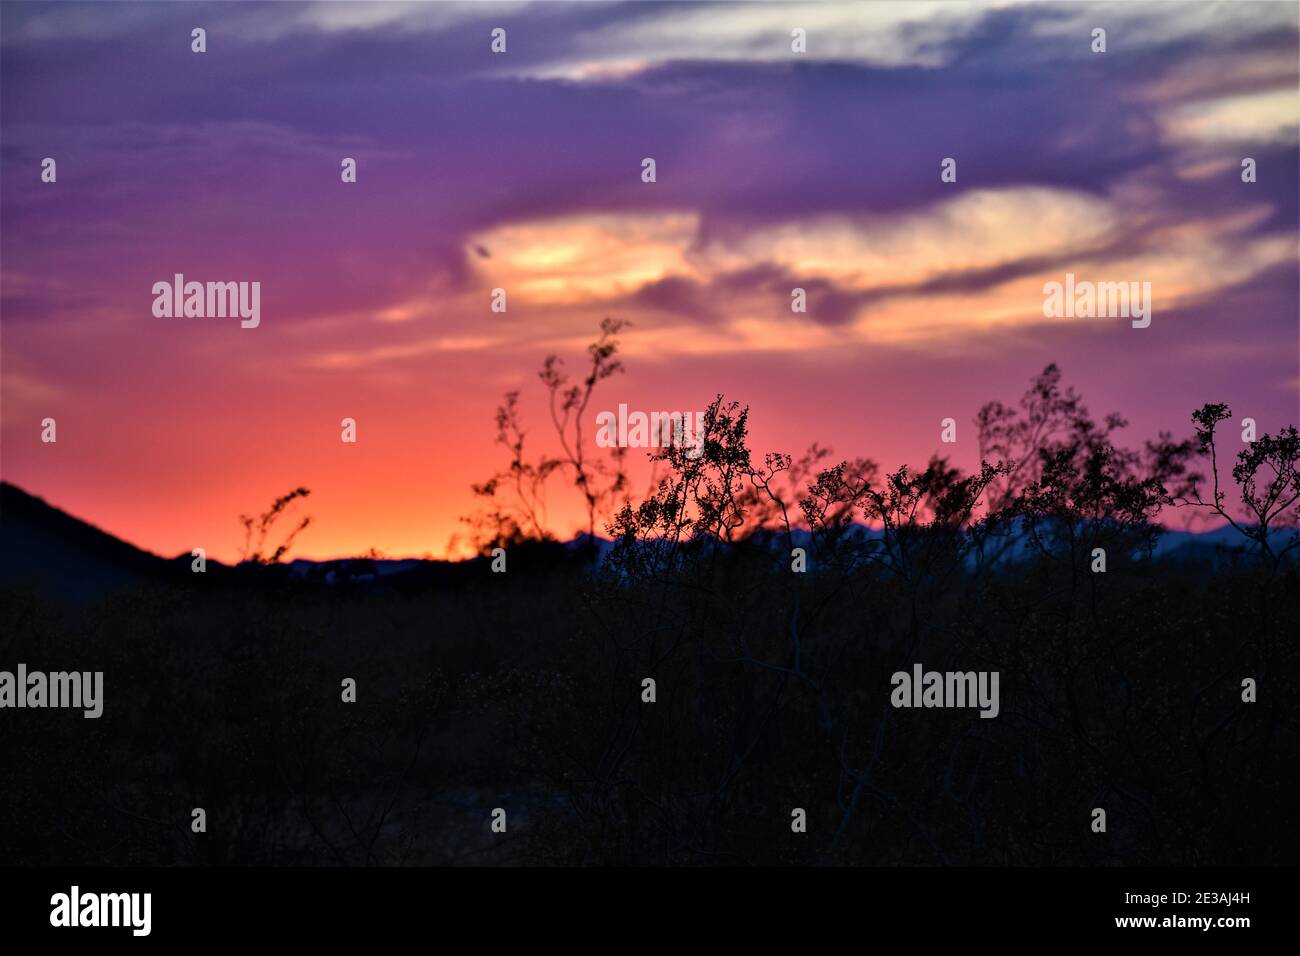 Un bel tramonto nei deserti dell'Arizona. Gli incredibili colori del cielo sono un'esperienza unica nella vita. Foto Stock